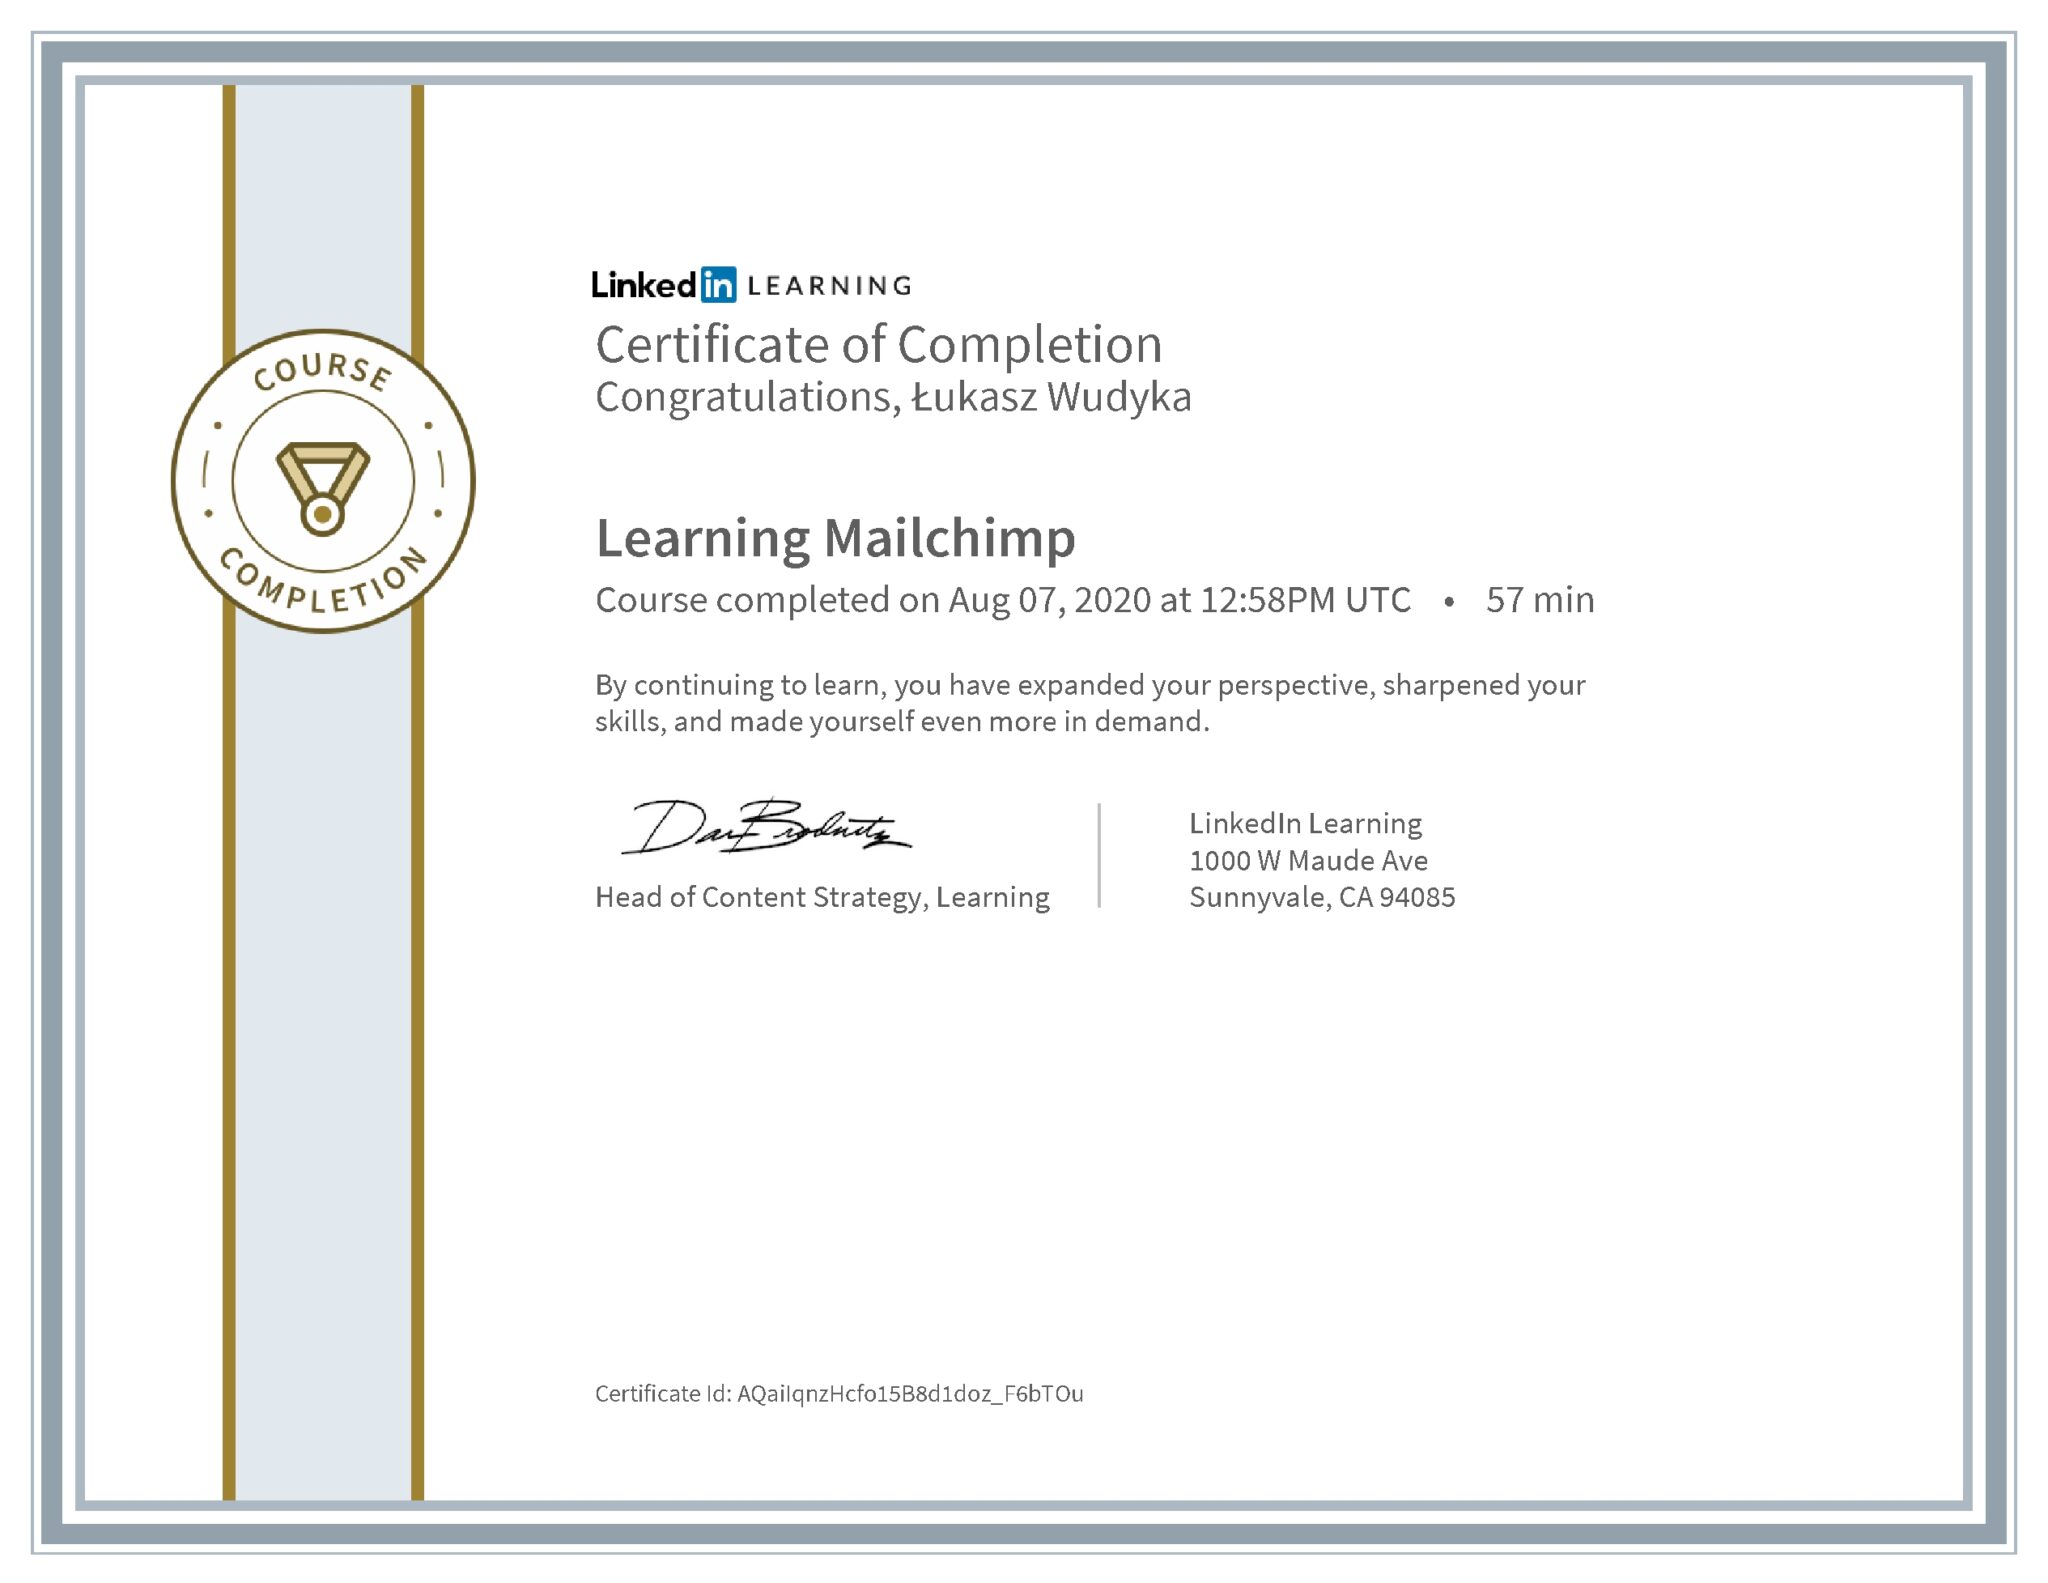 Łukasz Wudyka certyfikat LinkedIn Learning Mailchimp